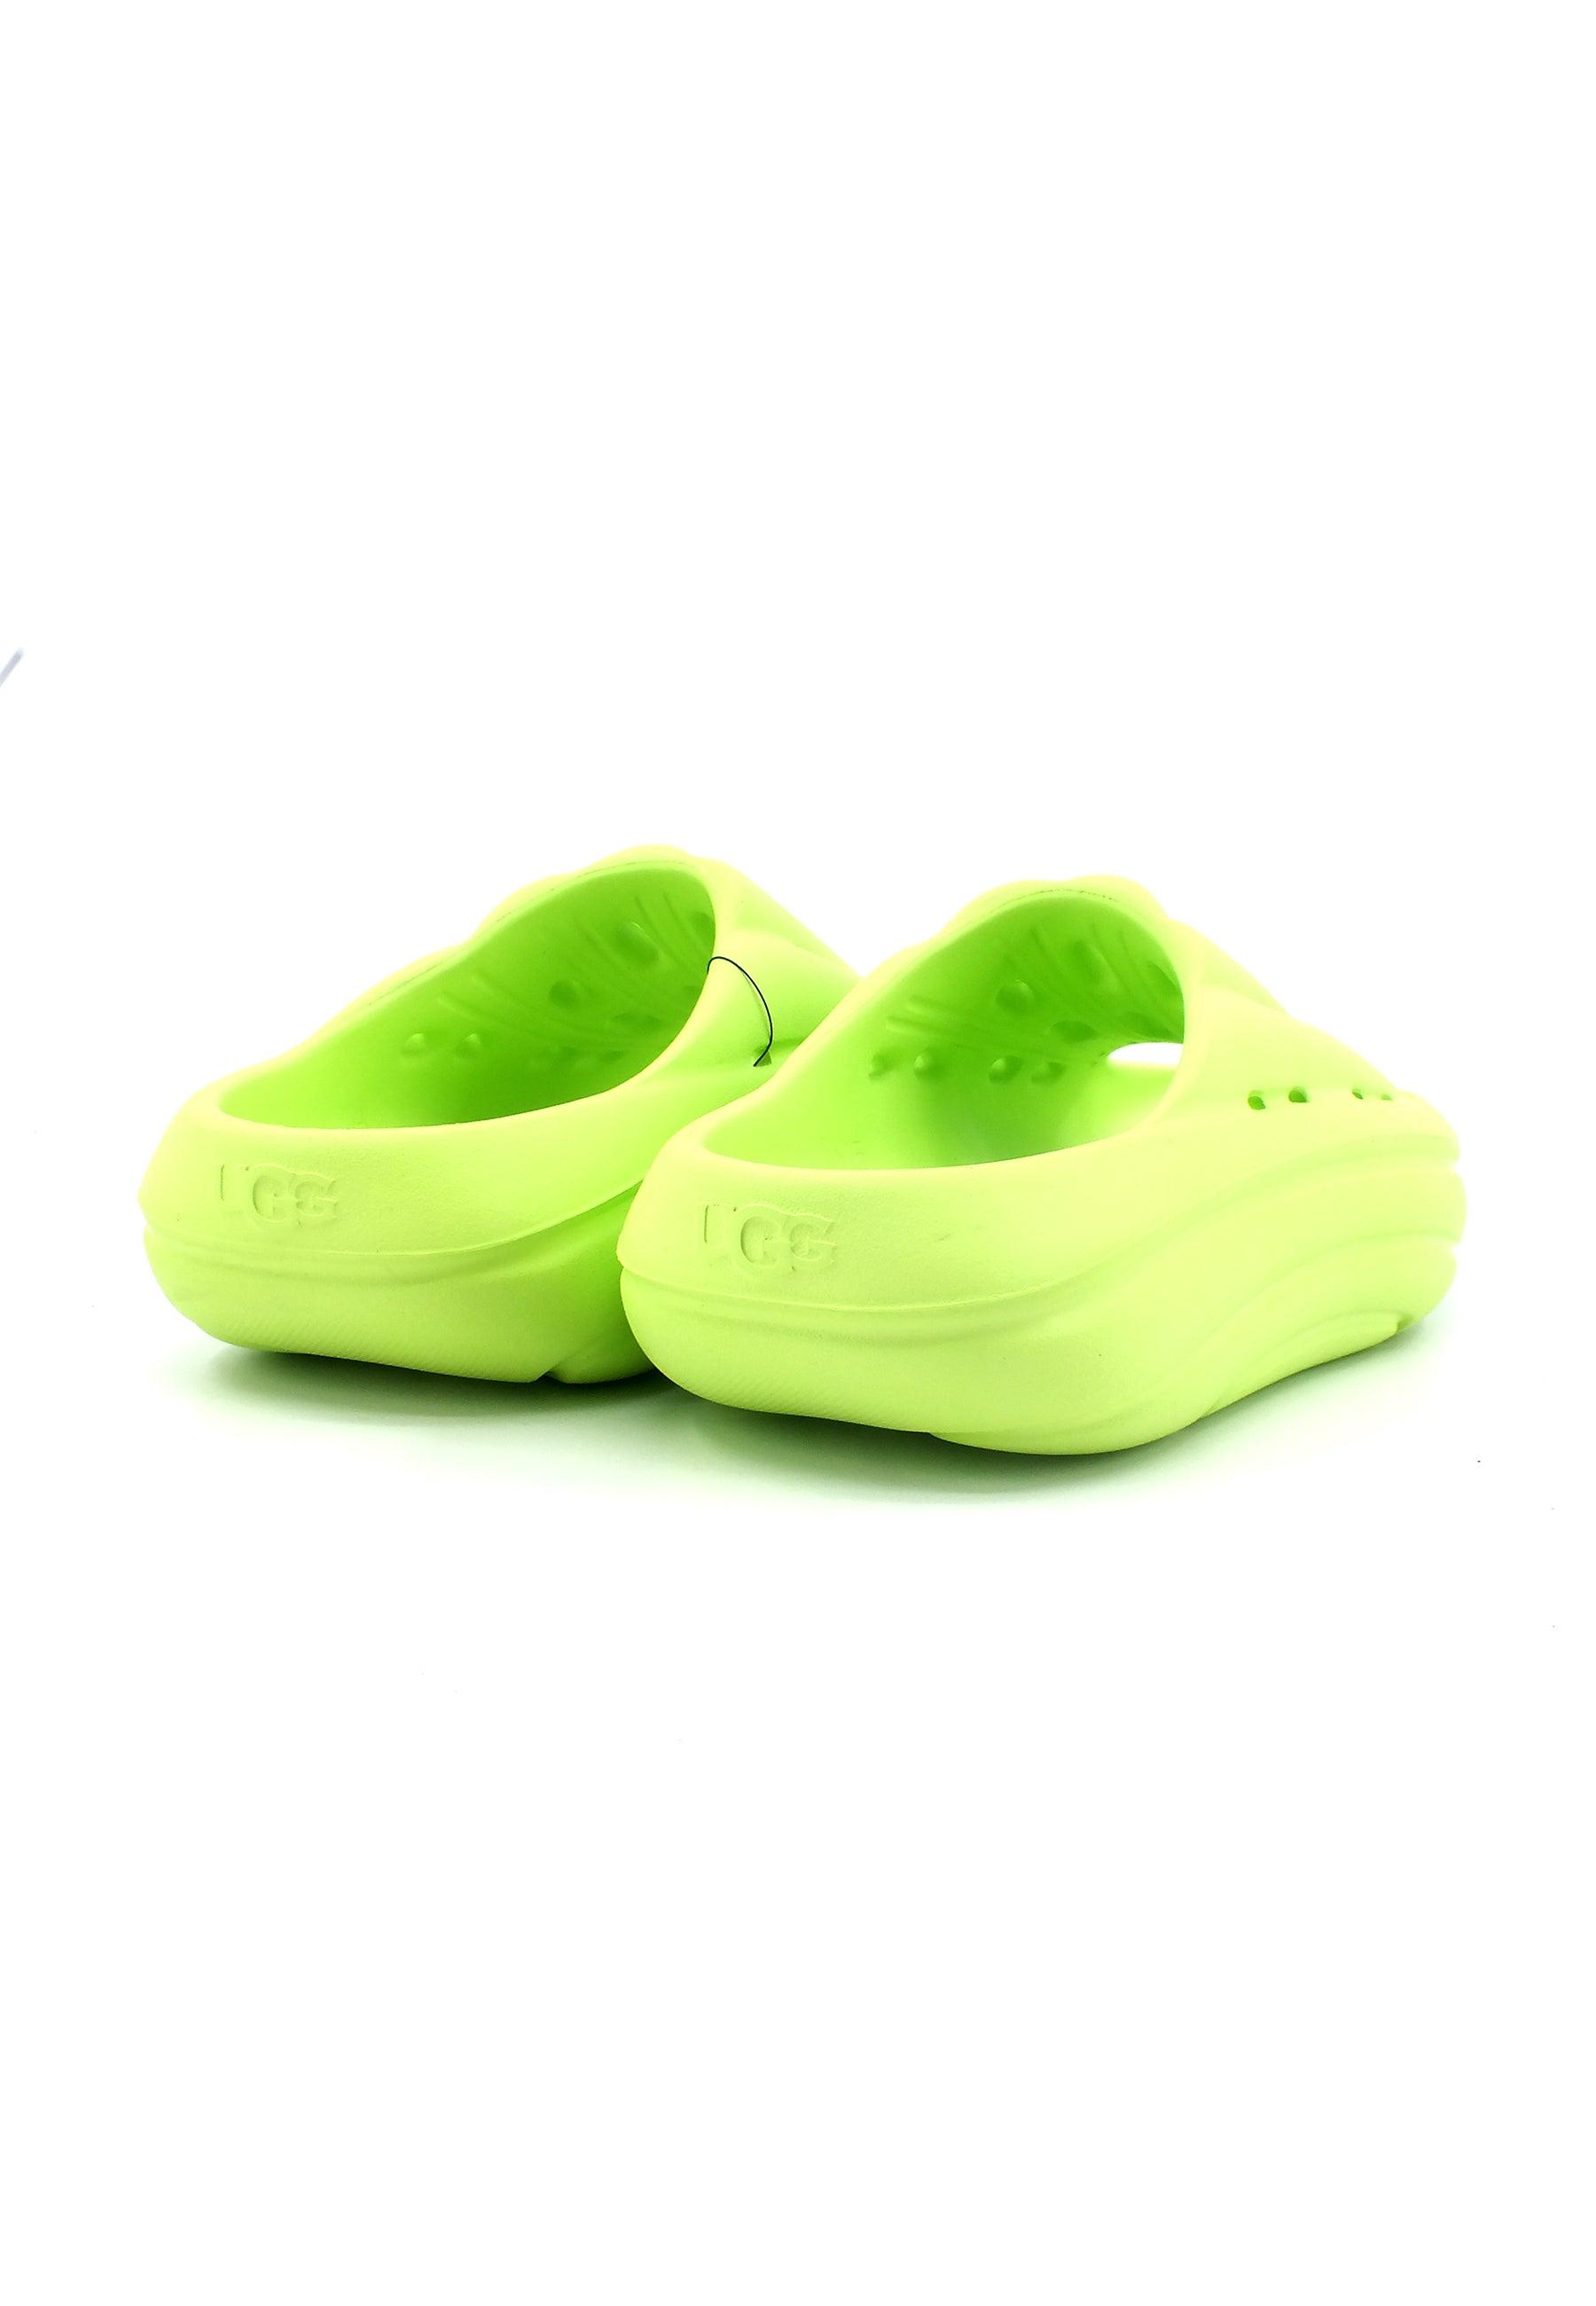 UGG Foamo Slide Ciabatta Donna Pale Chartreuse Verde W1136880 - Sandrini Calzature e Abbigliamento